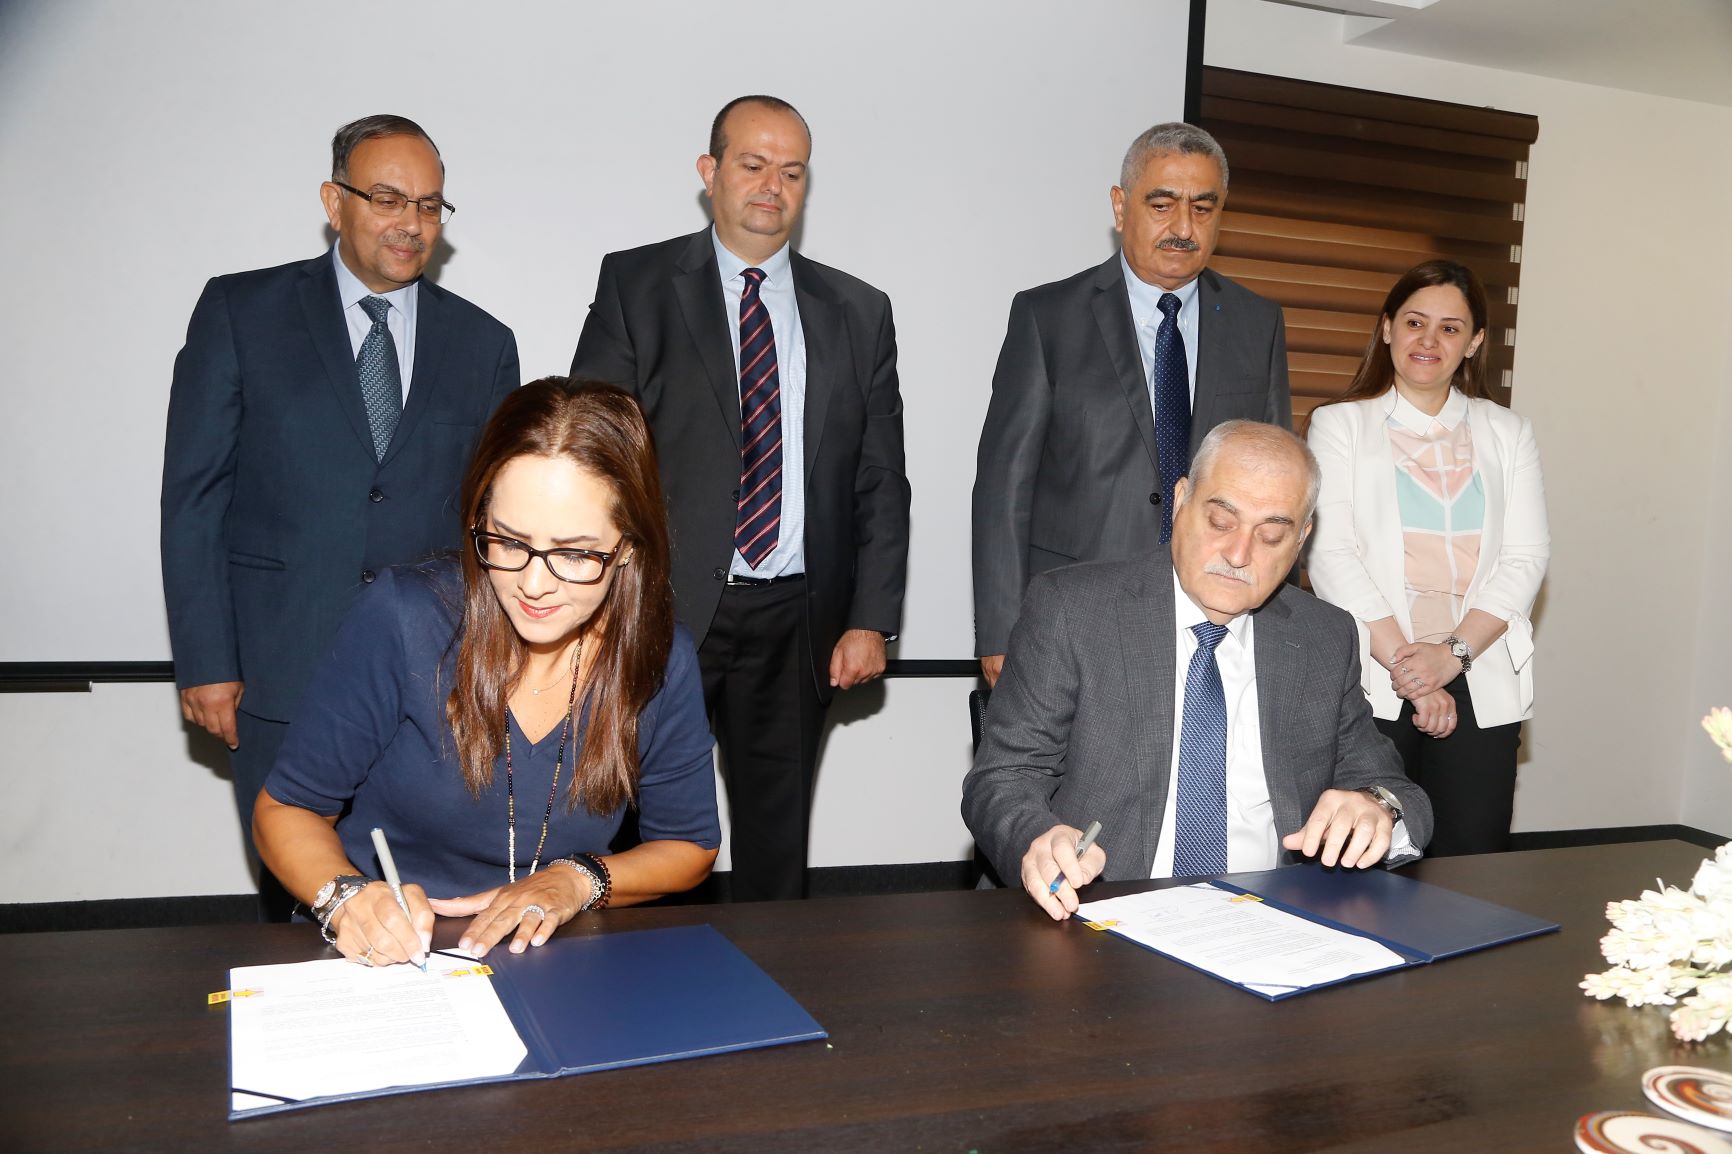 جبق يطلق السجل الوطني للأبحاث السريرية الأول في لبنان.. الأول من نوعه عربياً والـ18 على مستوى العالم!